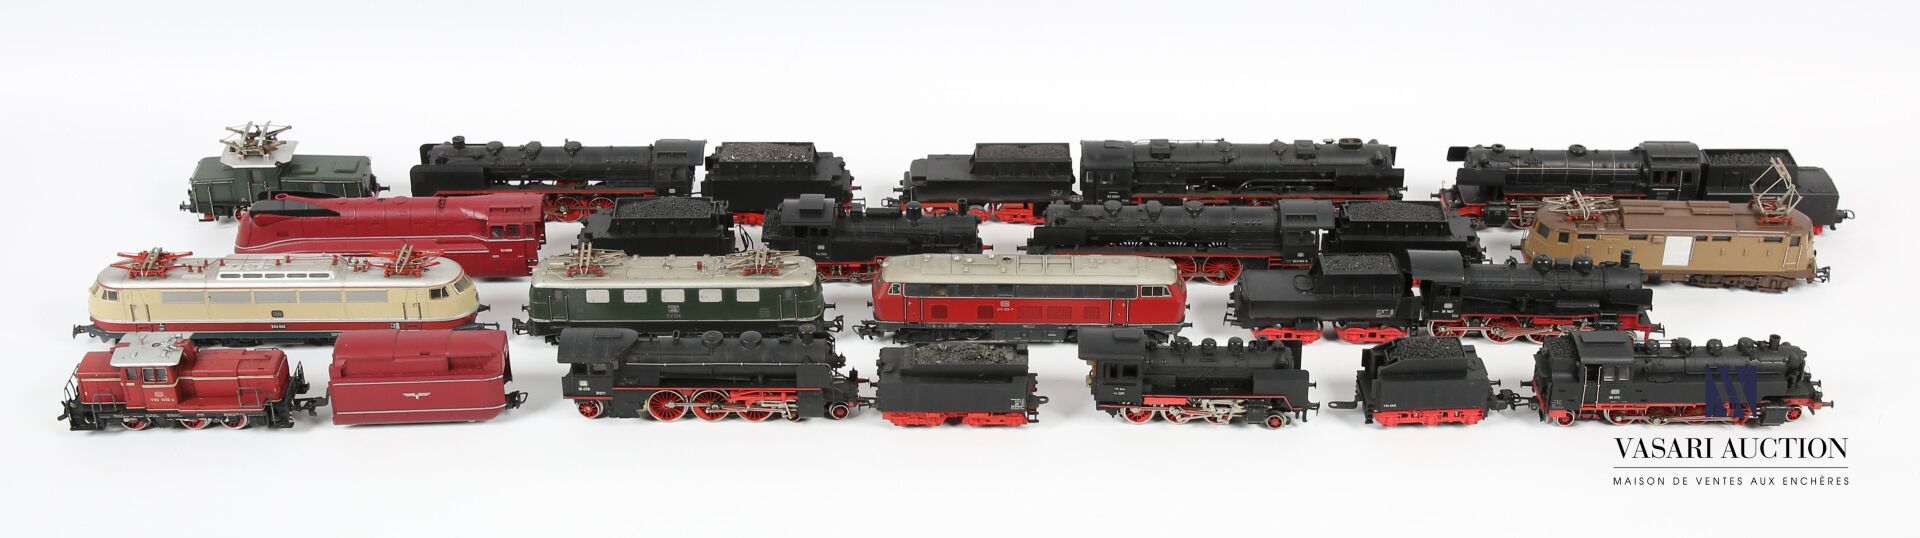 Null 马克林 - 德国
拍品包括8辆机车-8辆货车-7辆煤车
(轻微磨损 - 按原样出售)